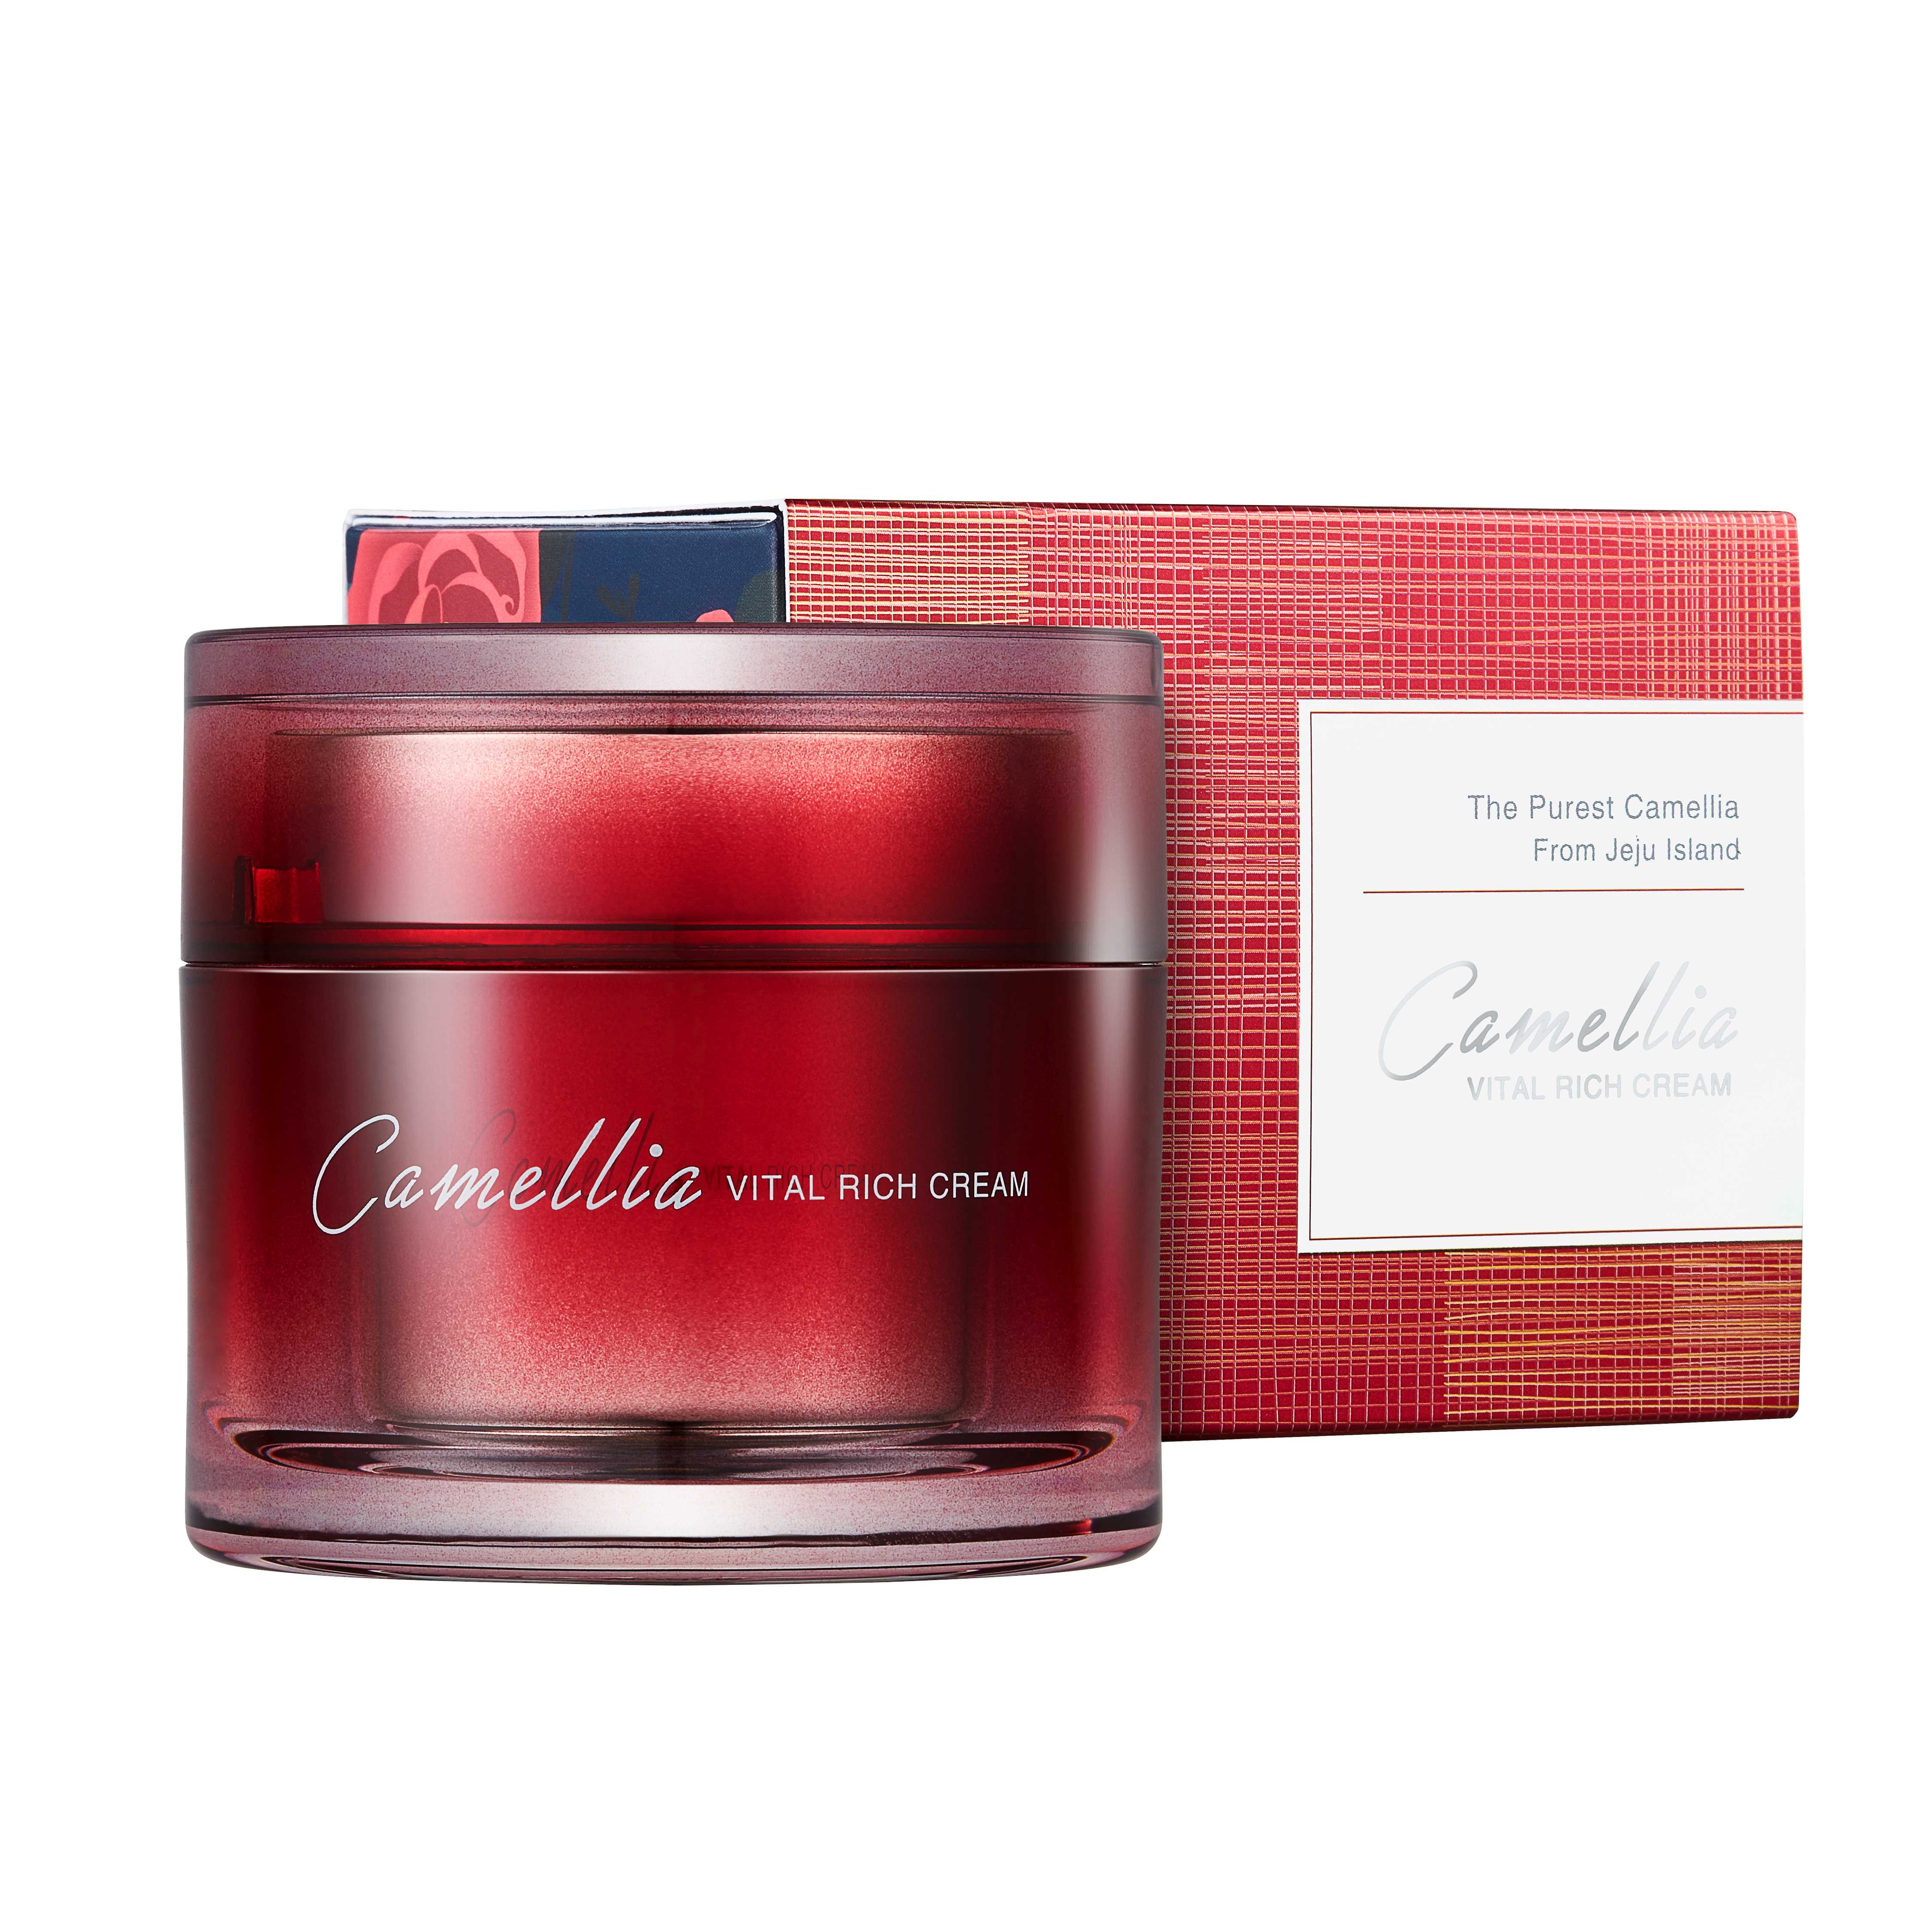 Camellia Vital Rich Cream